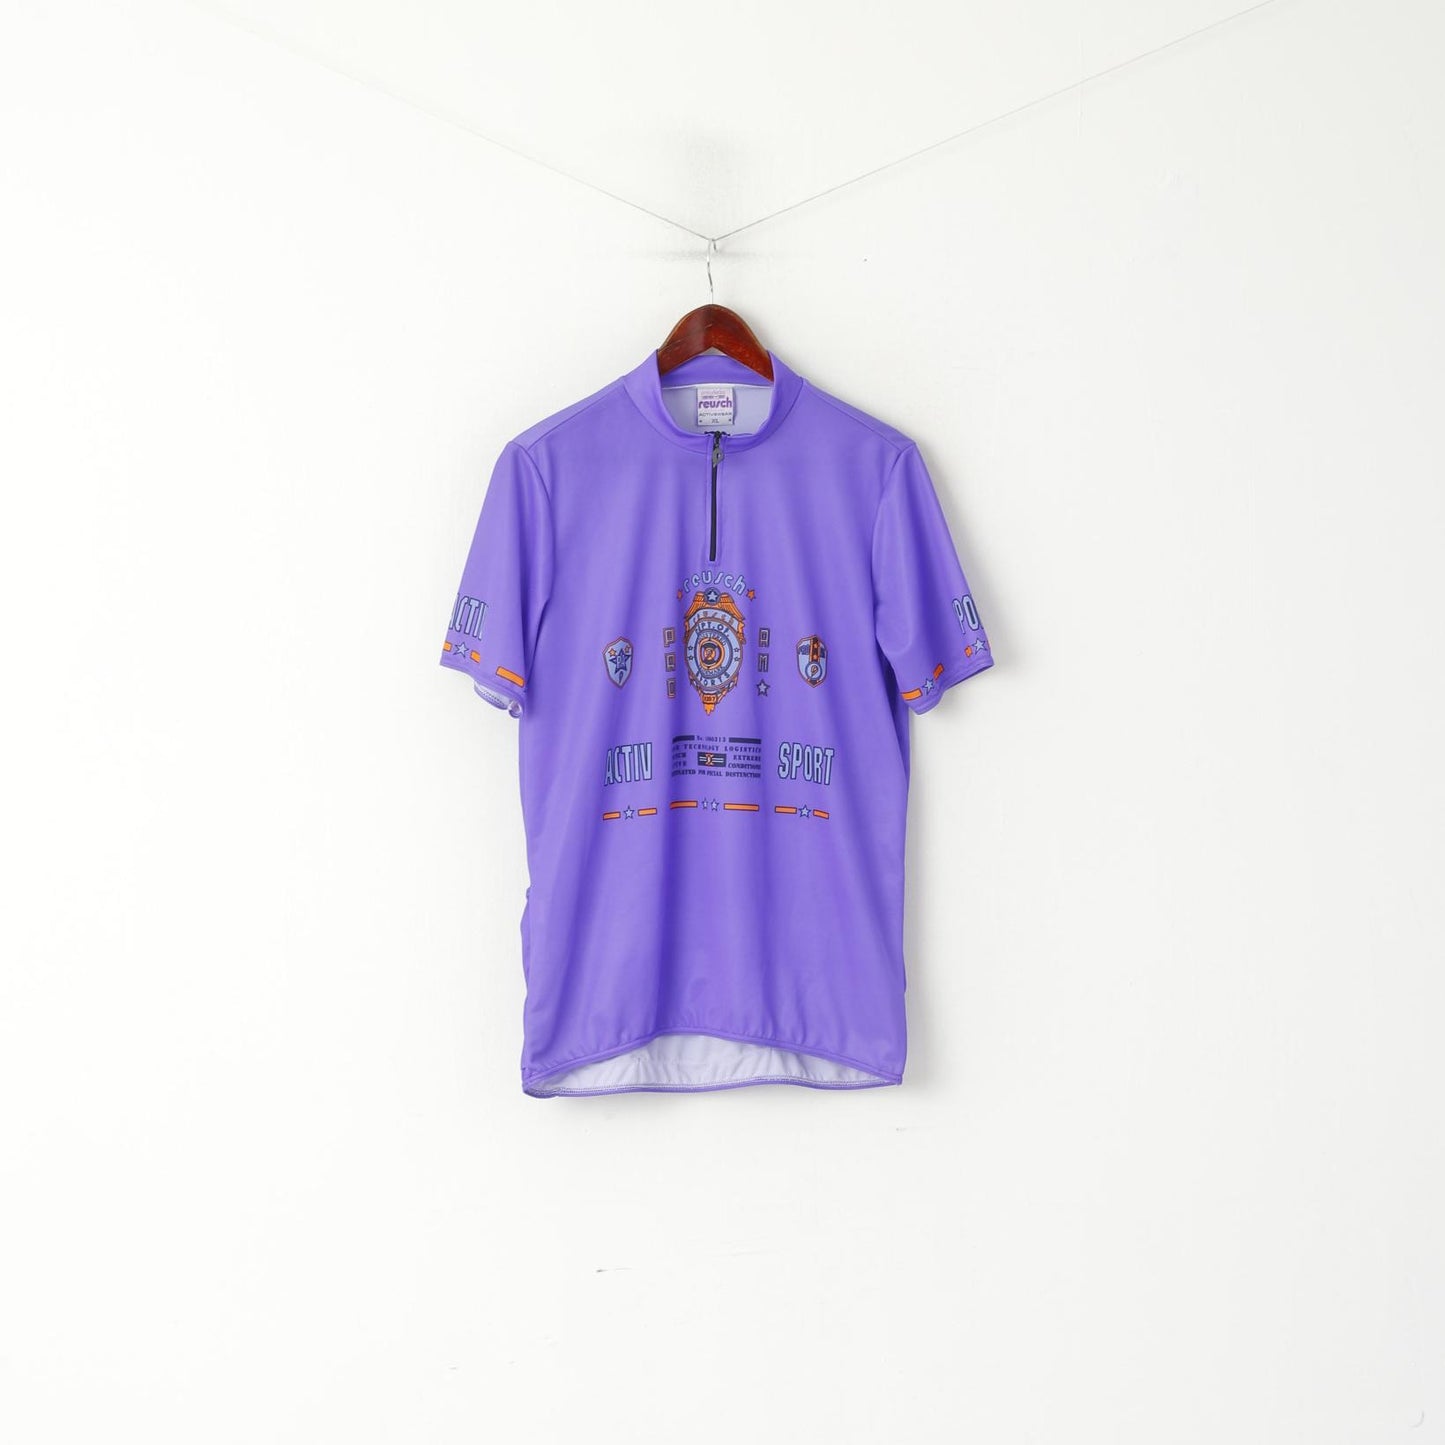 Reusch Men XL Cycling Shirt Purple Bike Zip Neck Vintage Activewear Jersey Top